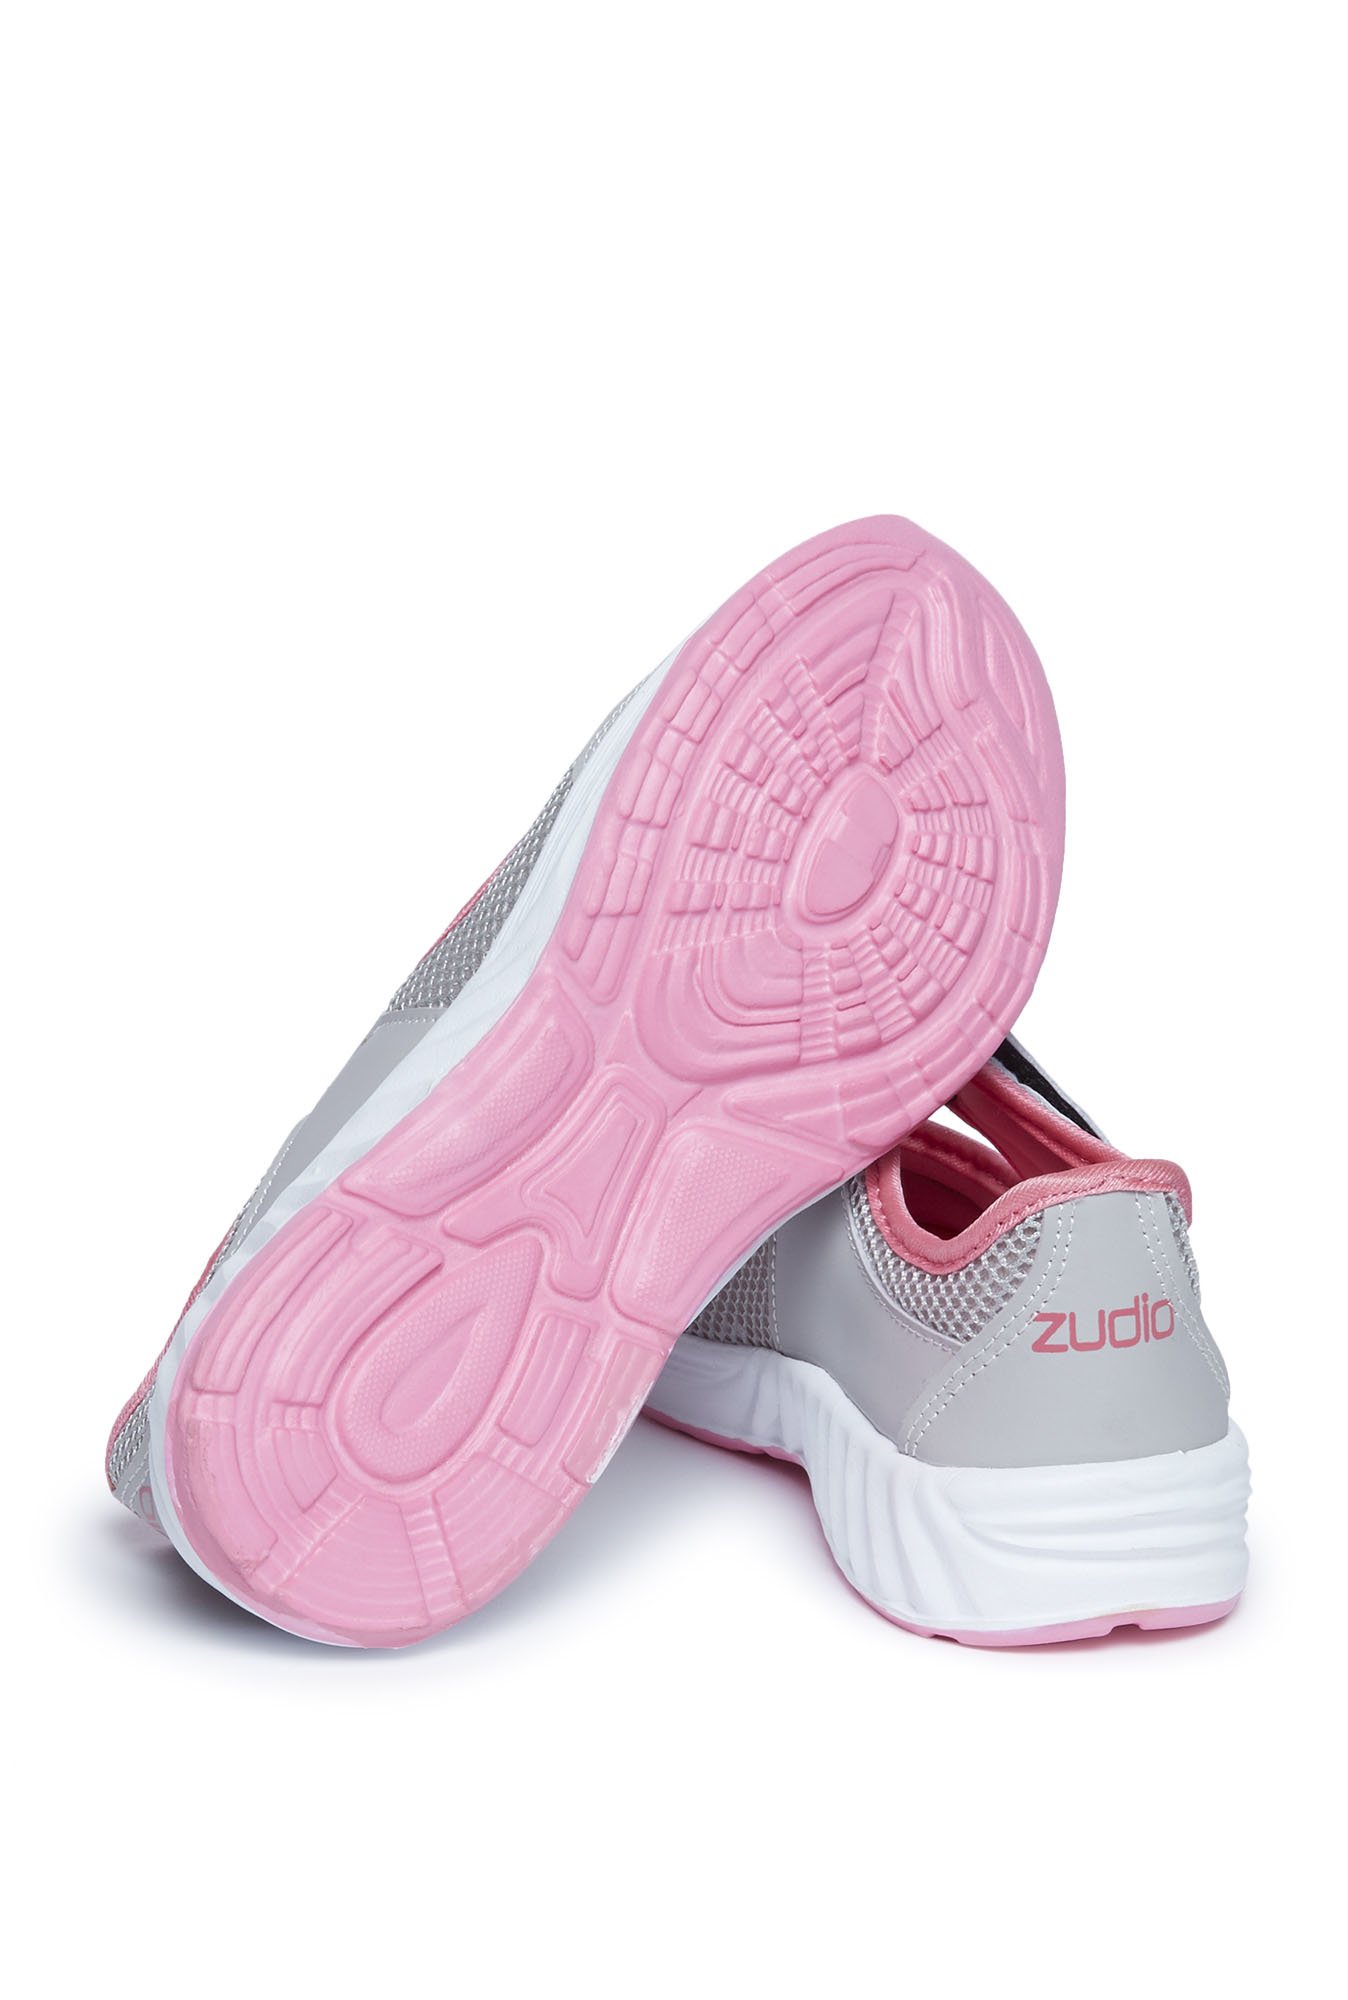 zudio shoes online